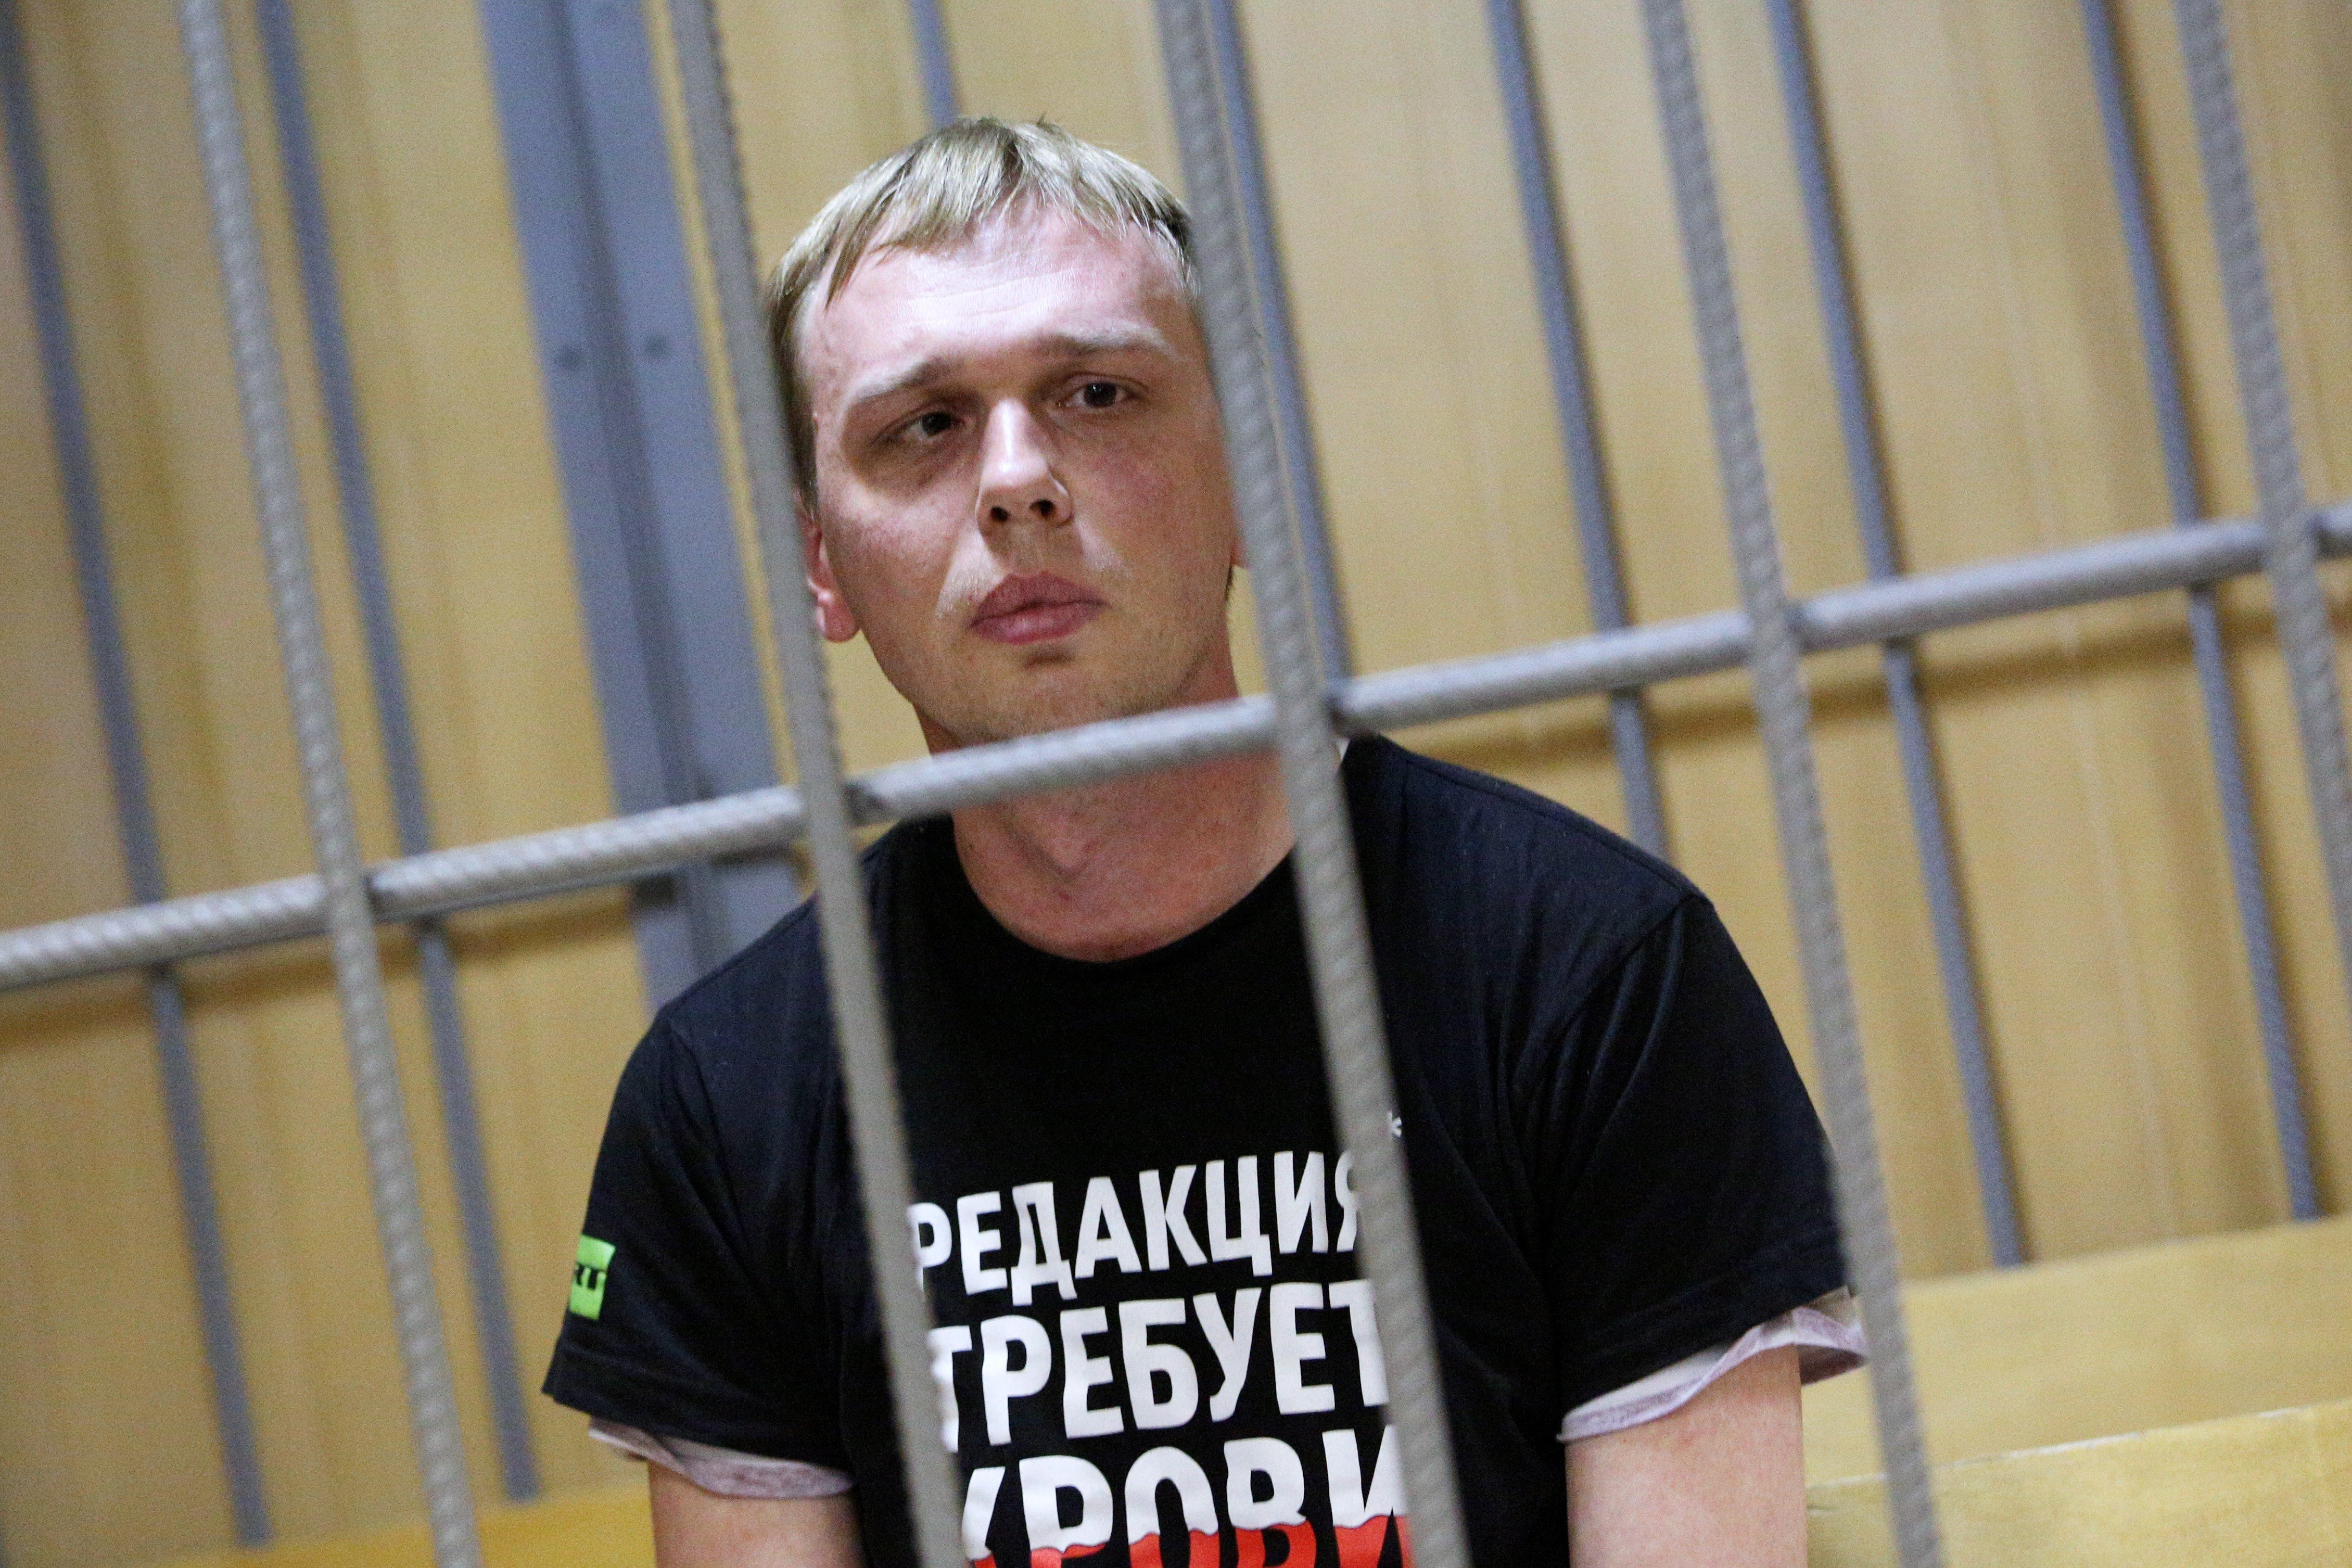 Бывшим служителям закона предъявят обвинение по уголовному делу Фото: © Global Look Press / City News Moskva